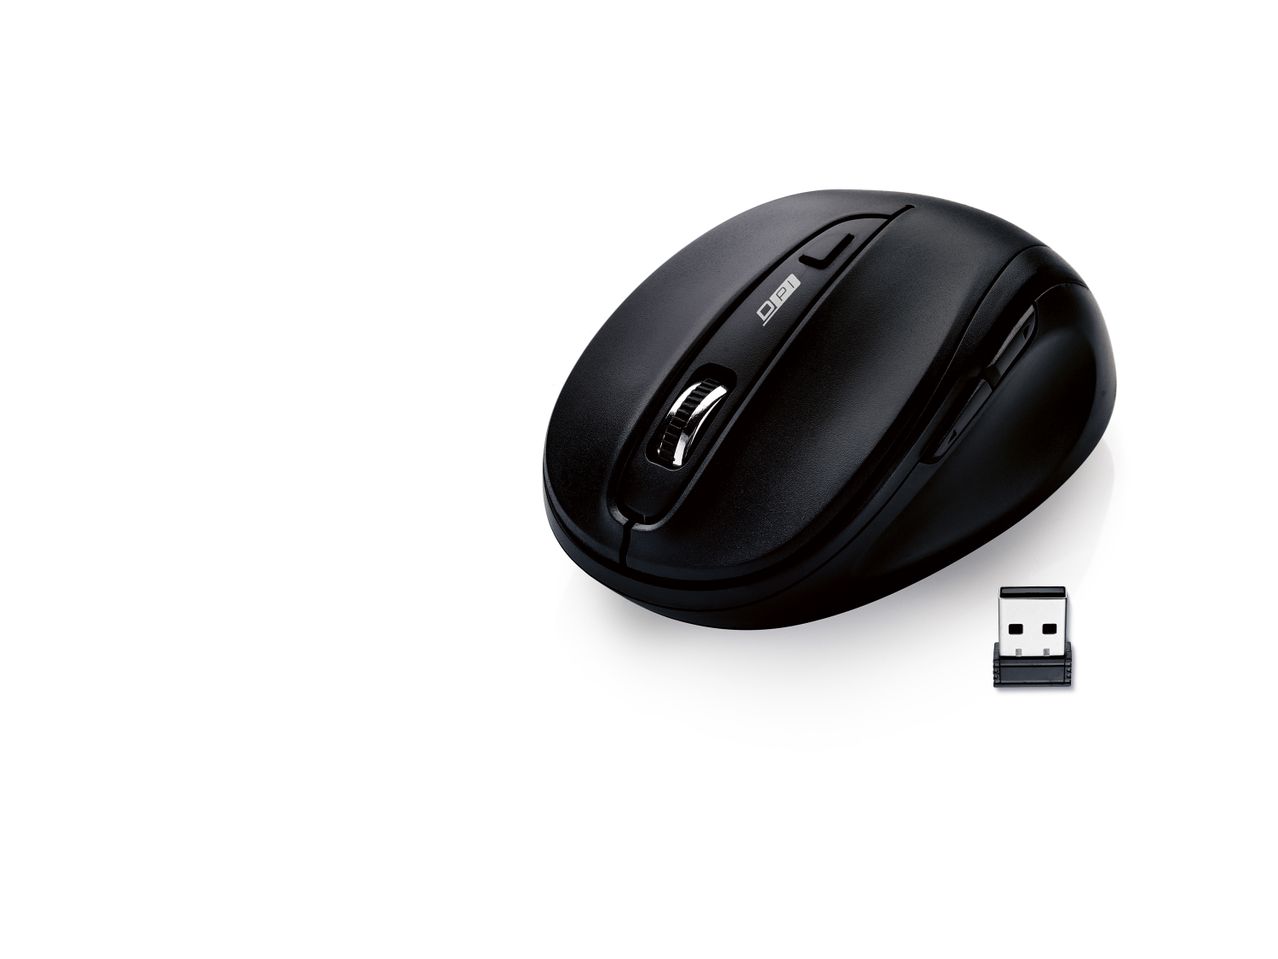 Mouse ottico wireless con ricevitore , prezzo 5.99 EUR 
Mouse ottico wireless con ...